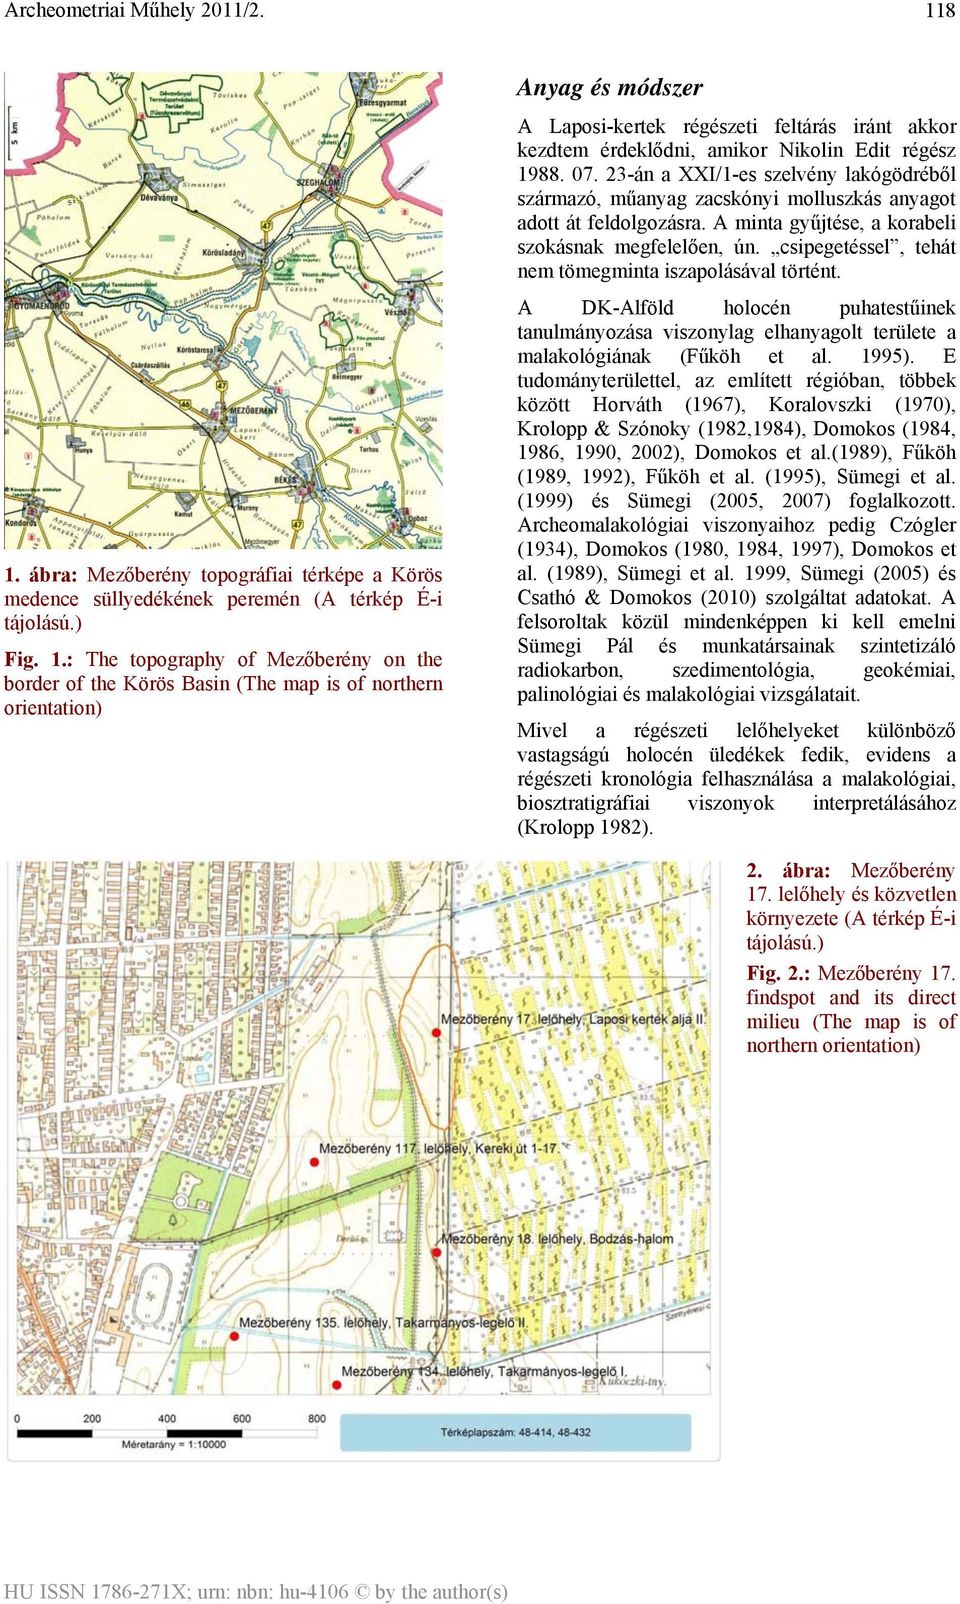 : The topography of Mezőberény on the border of the Körös Basin (The map is of northern orientation) Anyag és módszer A Laposi-kertek régészeti feltárás iránt akkor kezdtem érdeklődni, amikor Nikolin